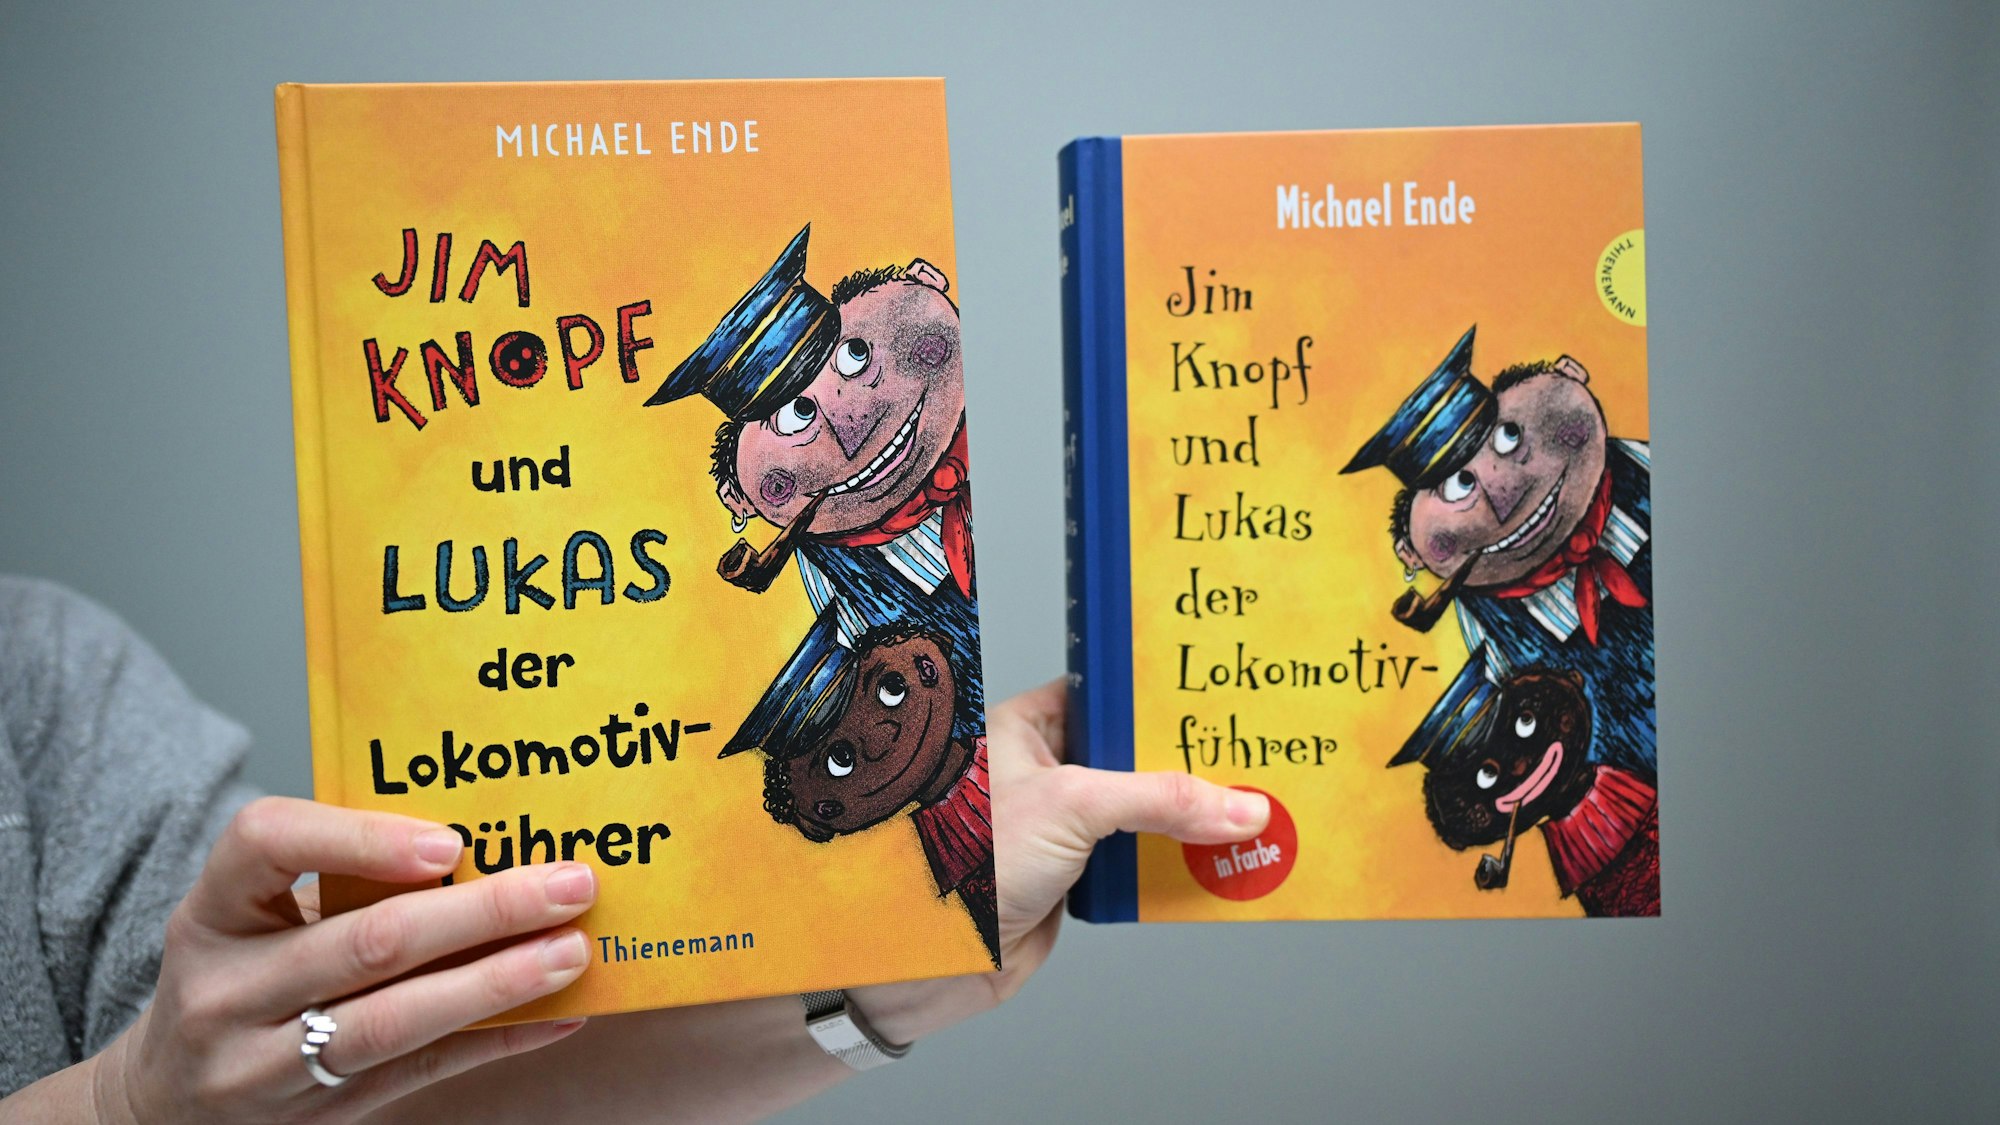 Die Jim-Knopf-Bücher von Michael Ende werden an die Jetztzeit angepasst und sollen zukünftig ohne rassistische Stereotype auskommen. Links das neue Cover, rechts die ursprüngliche Version.